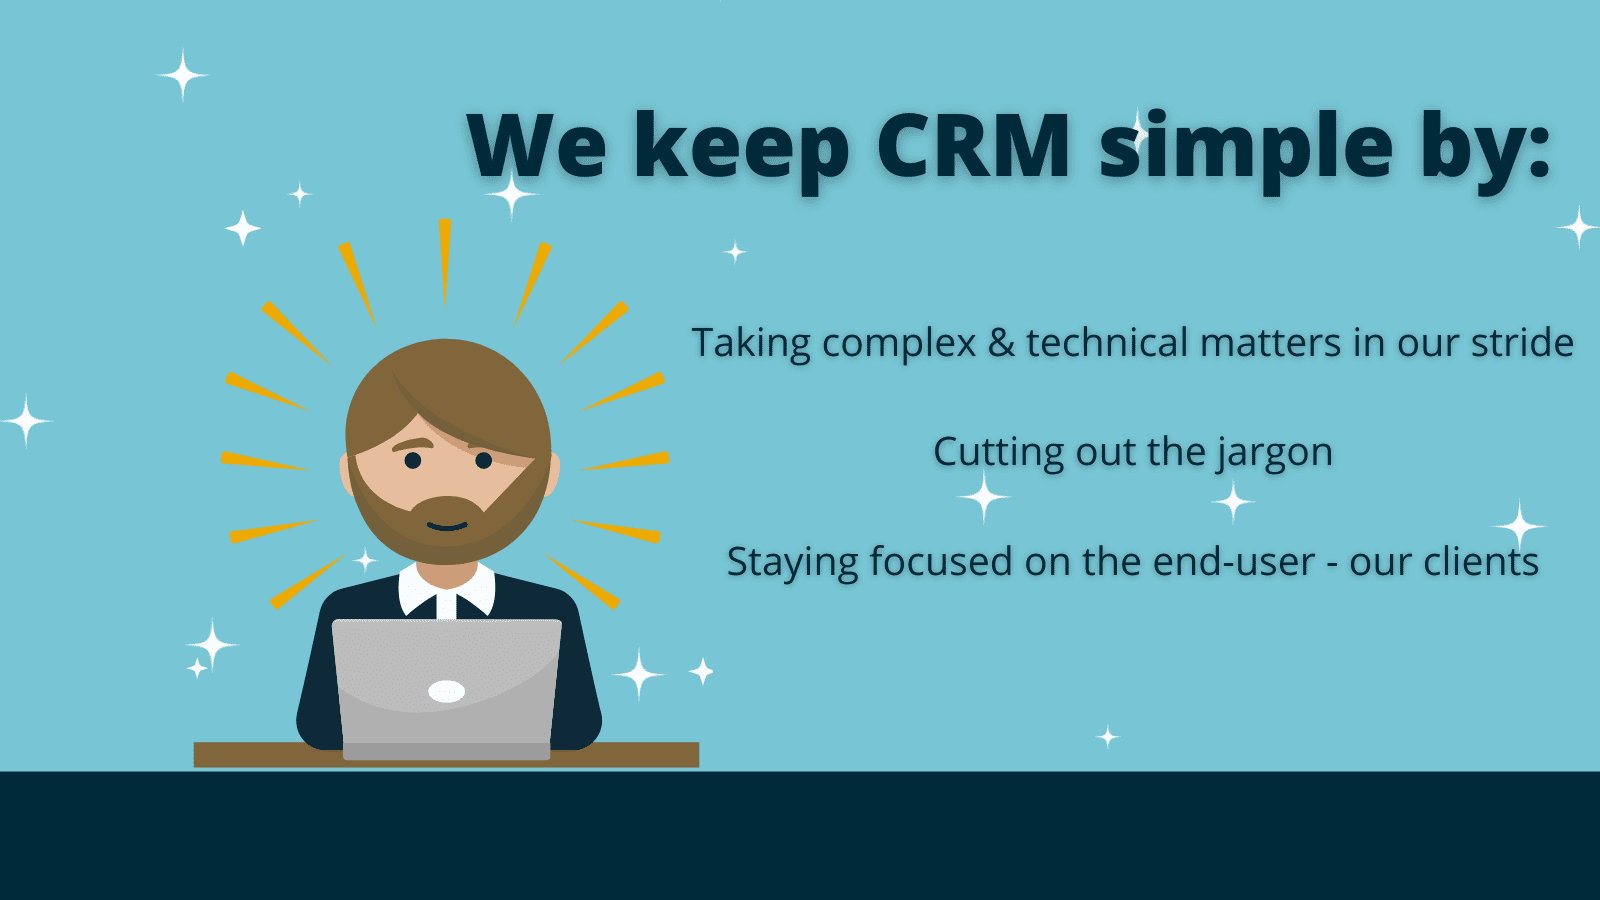 We keep powerful CRM simple